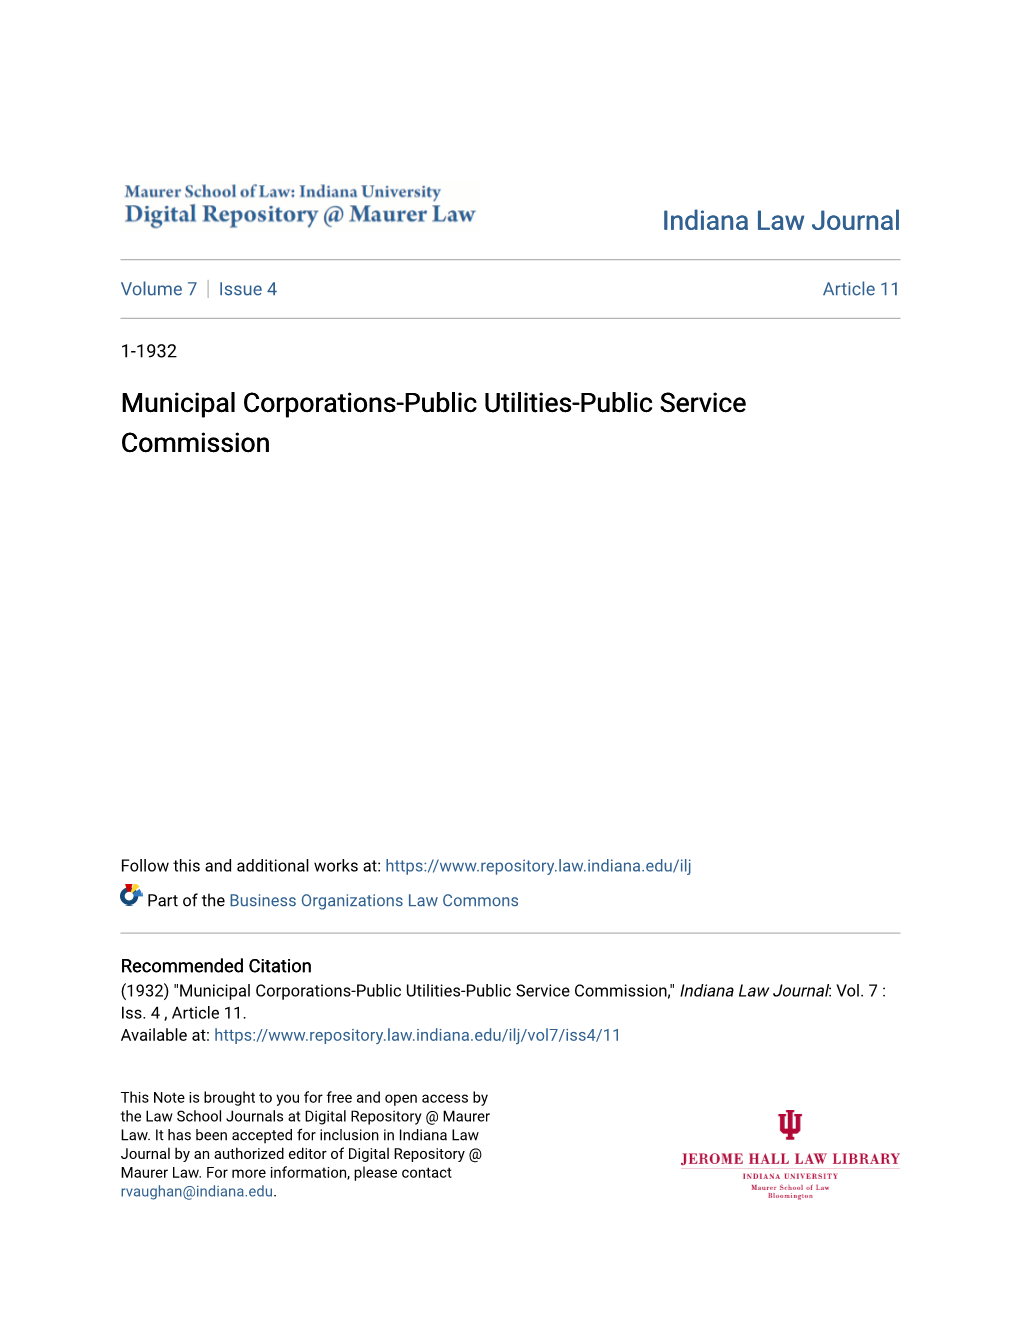 Municipal Corporations-Public Utilities-Public Service Commission